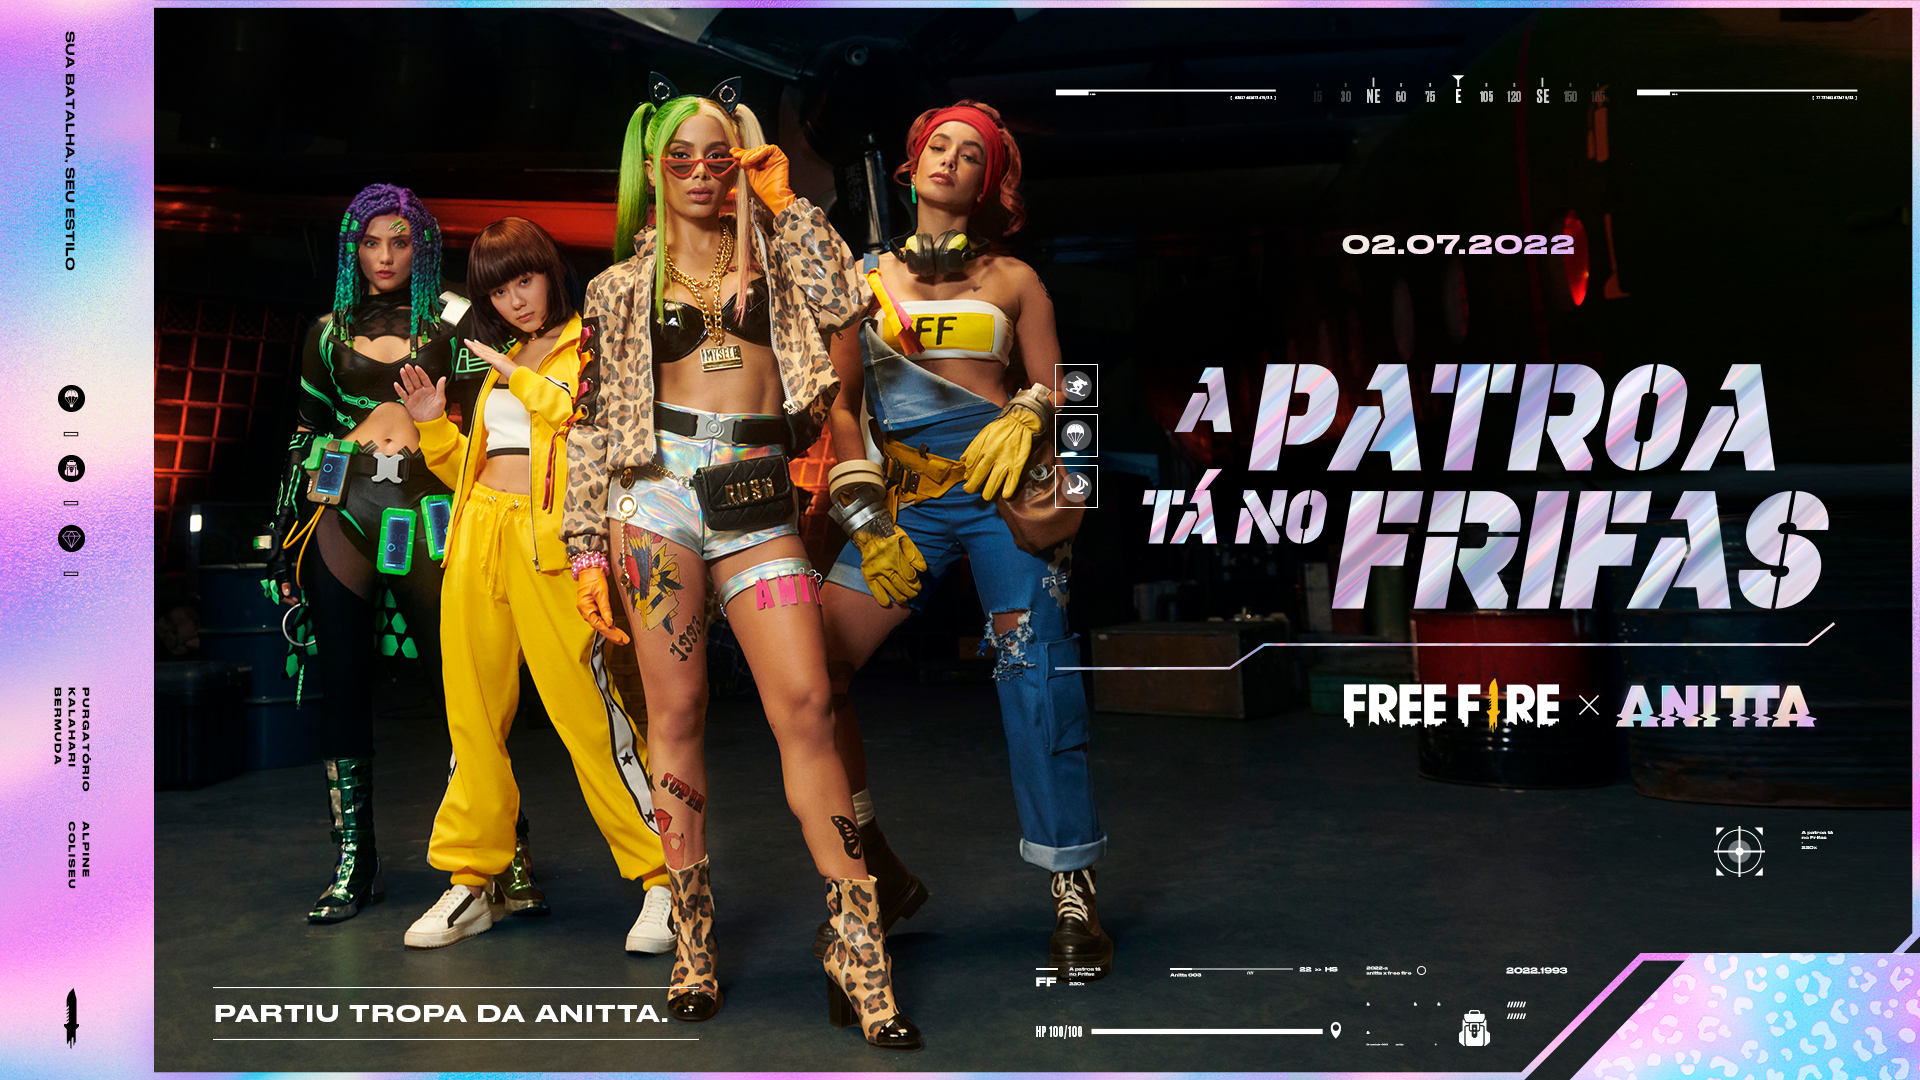 Free Fire e Anitta lançam música e clipe oficial da “Patroa”